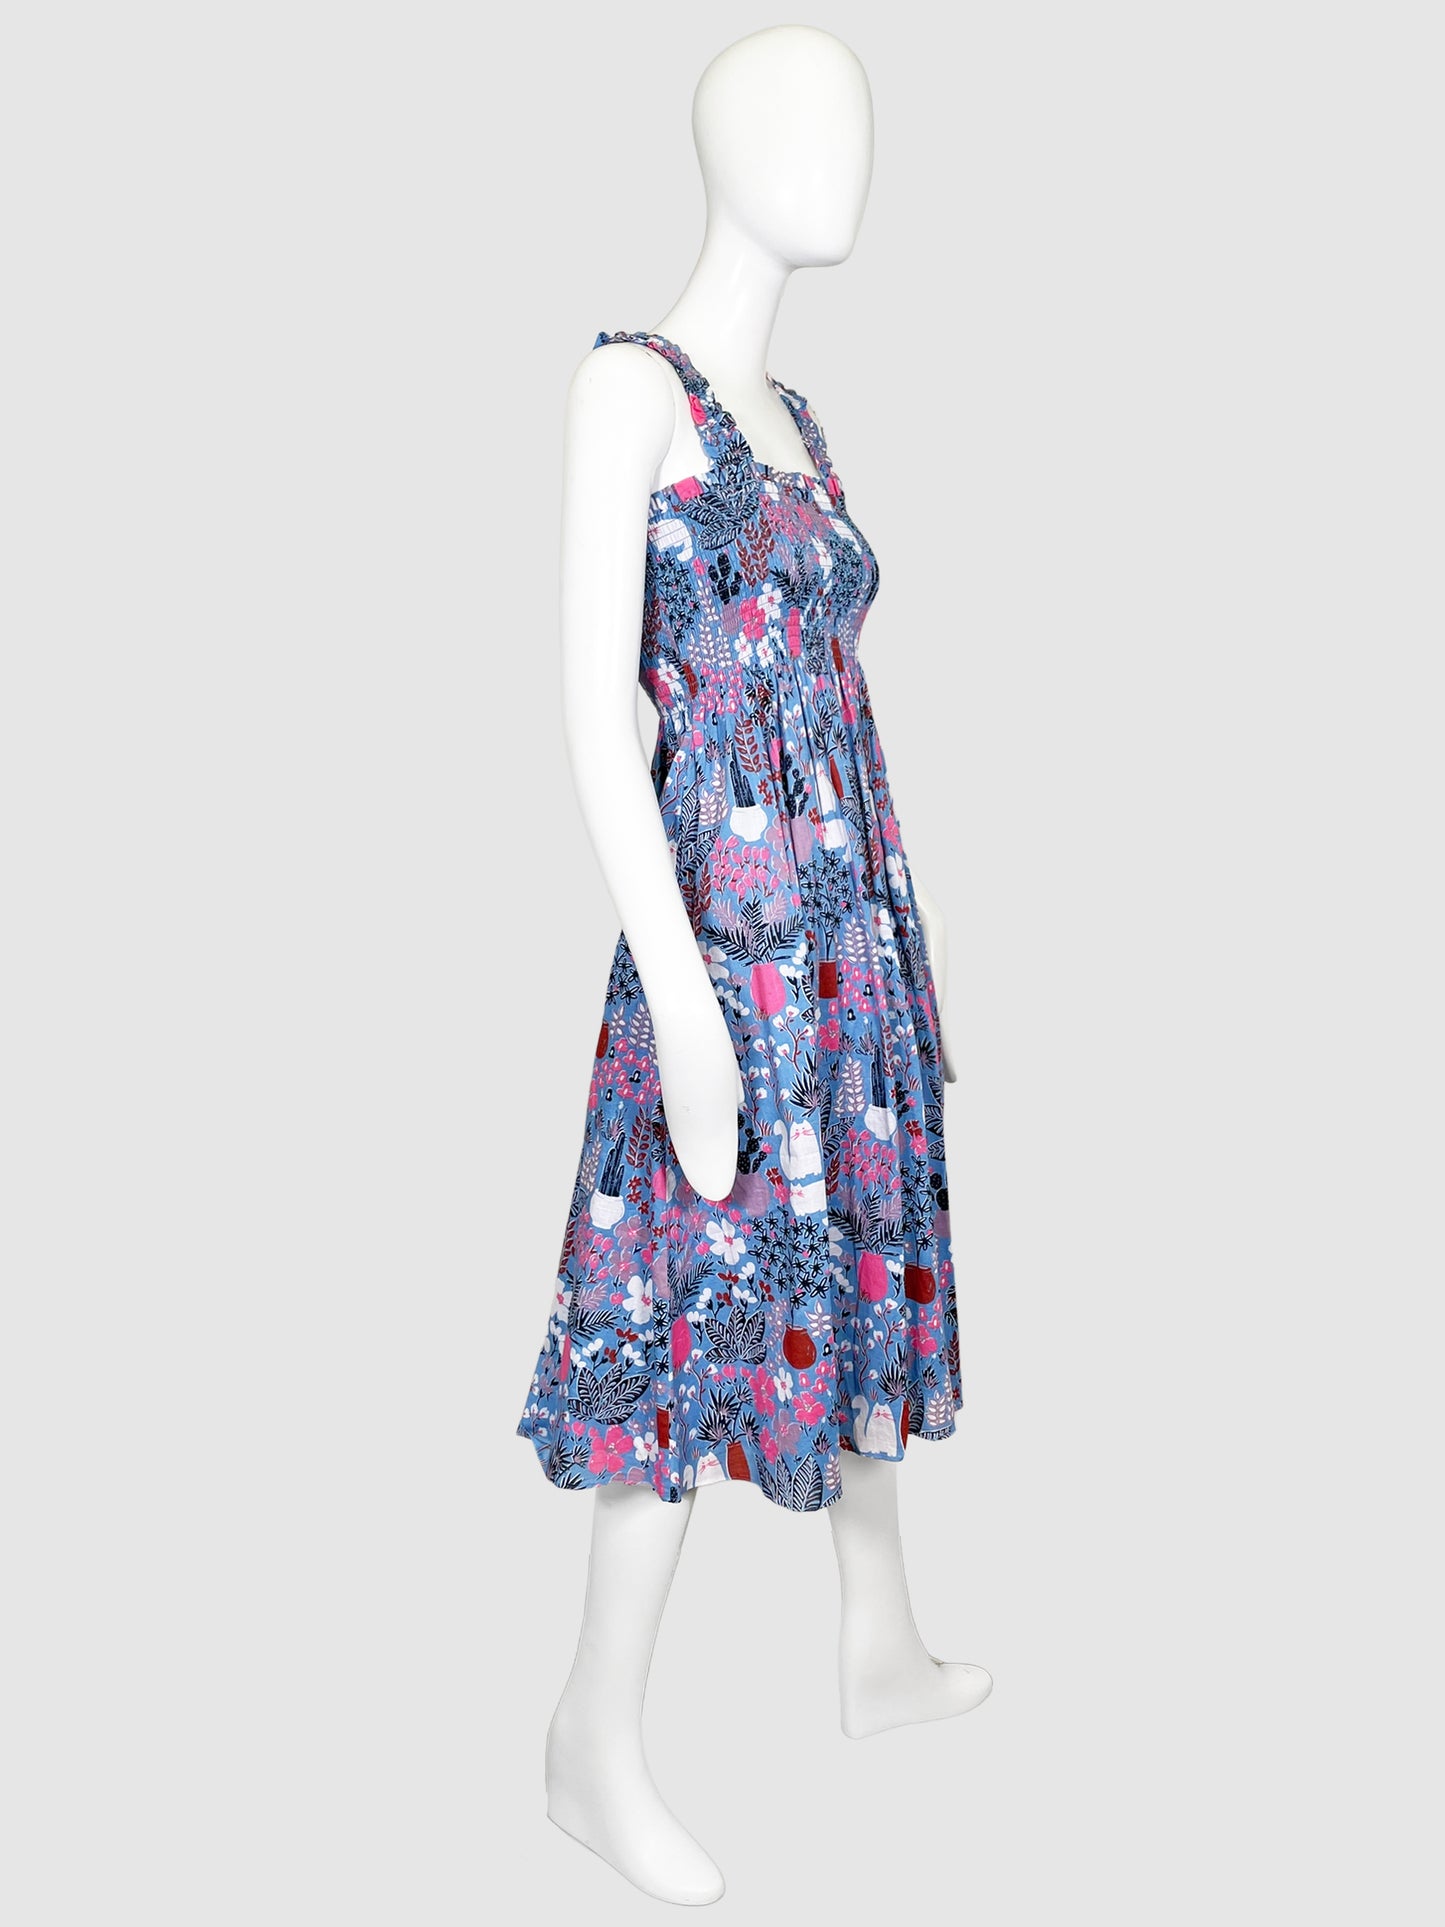 Kate Spade Floral Dress - Size XS